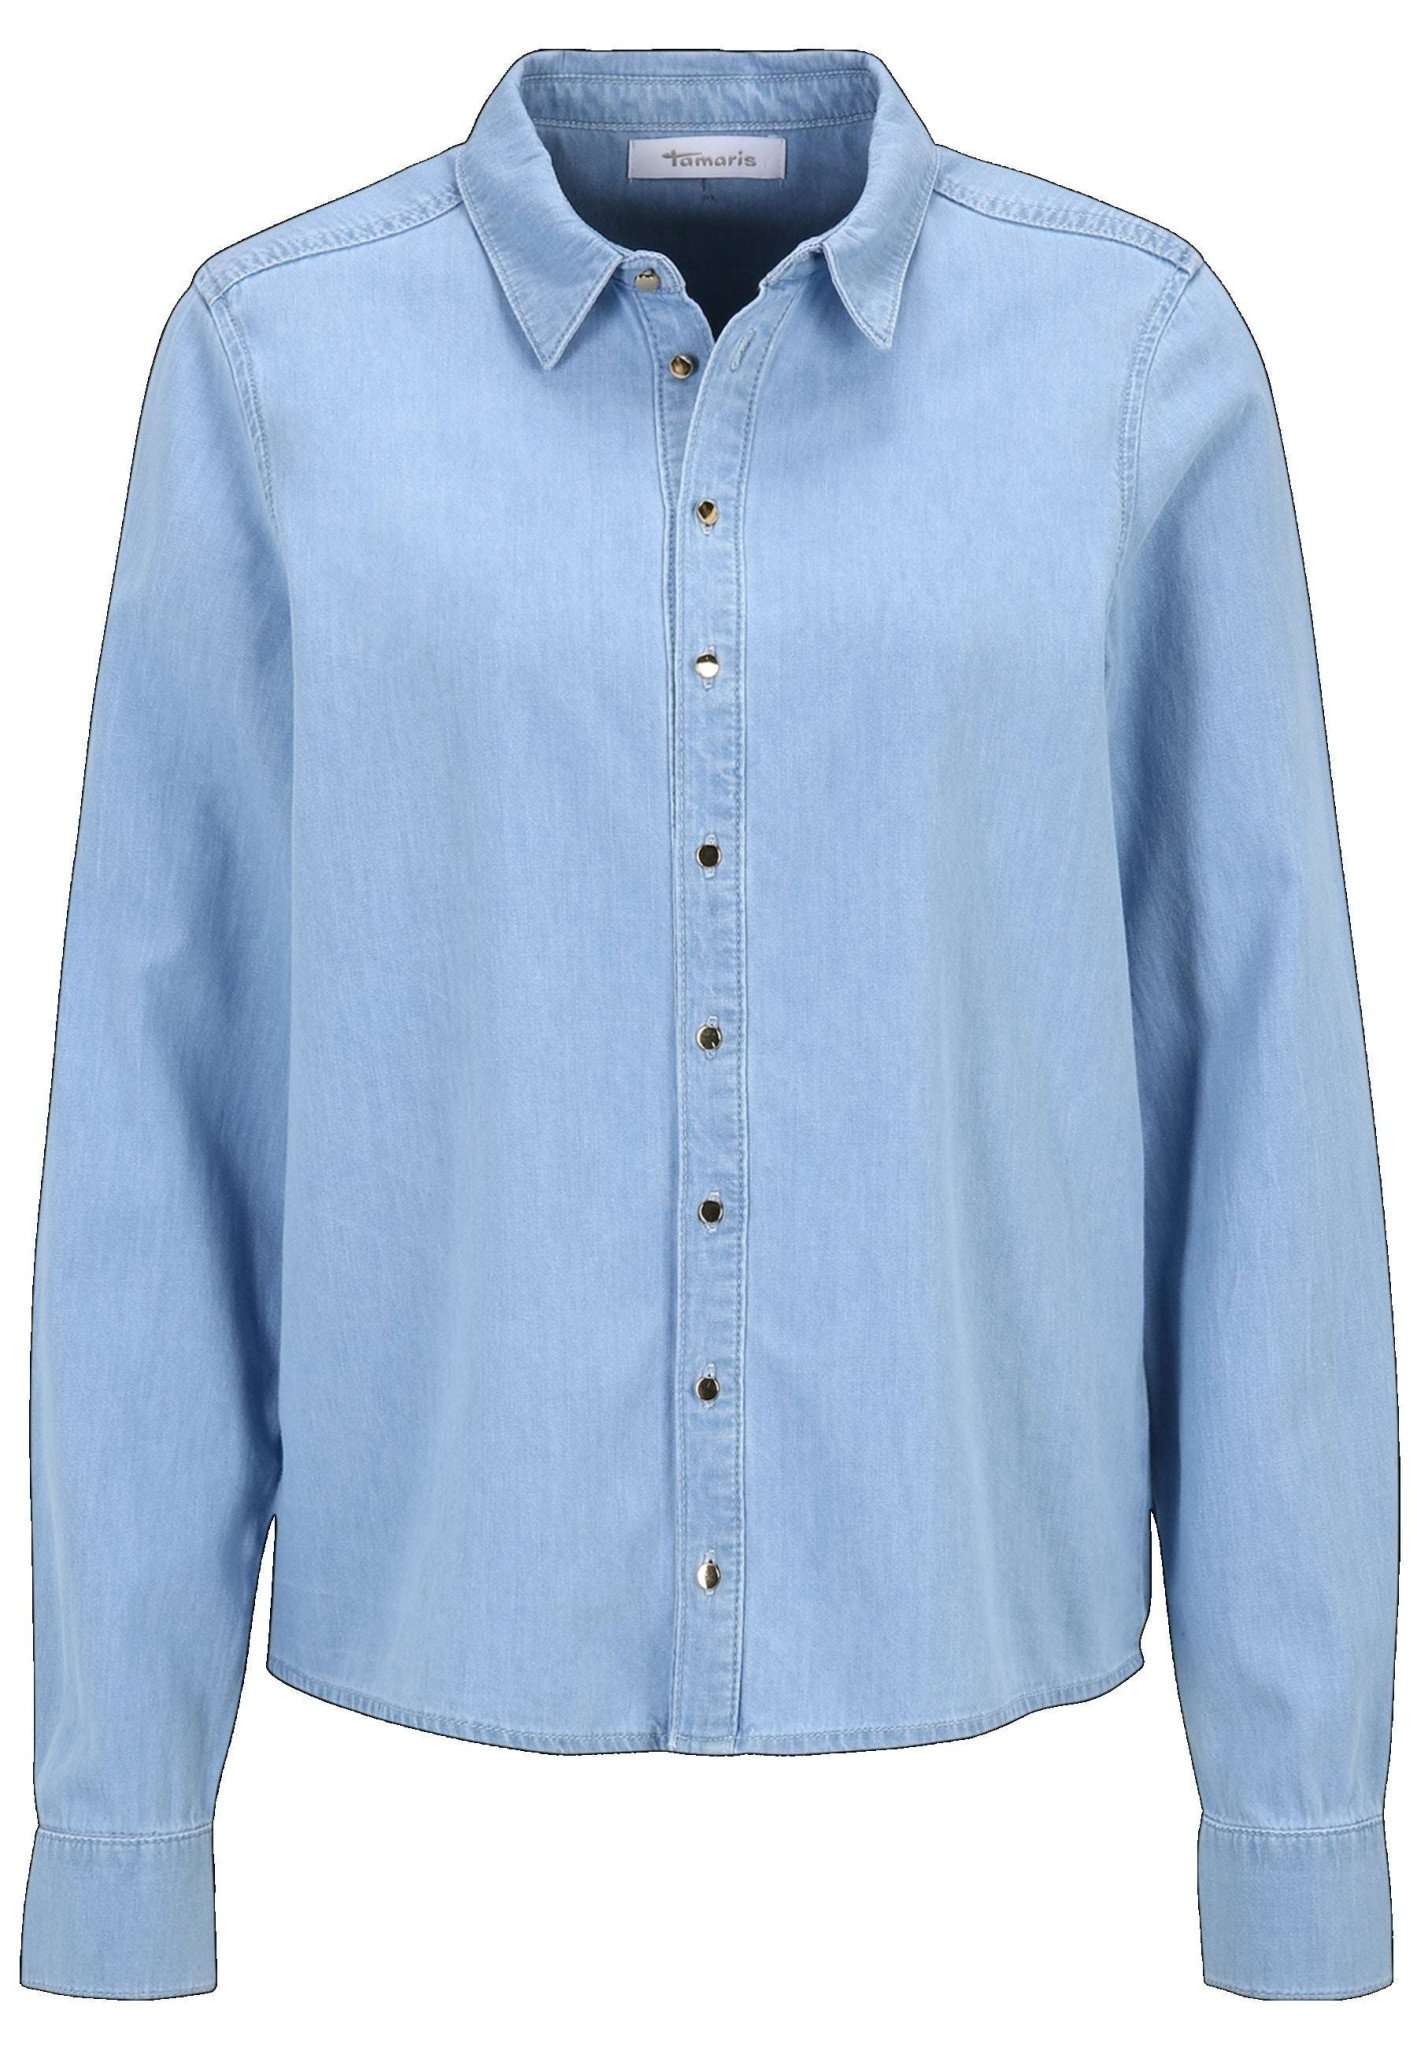 Arnheim Denim Shirt in Light Blue Denim Hemden Tamaris   